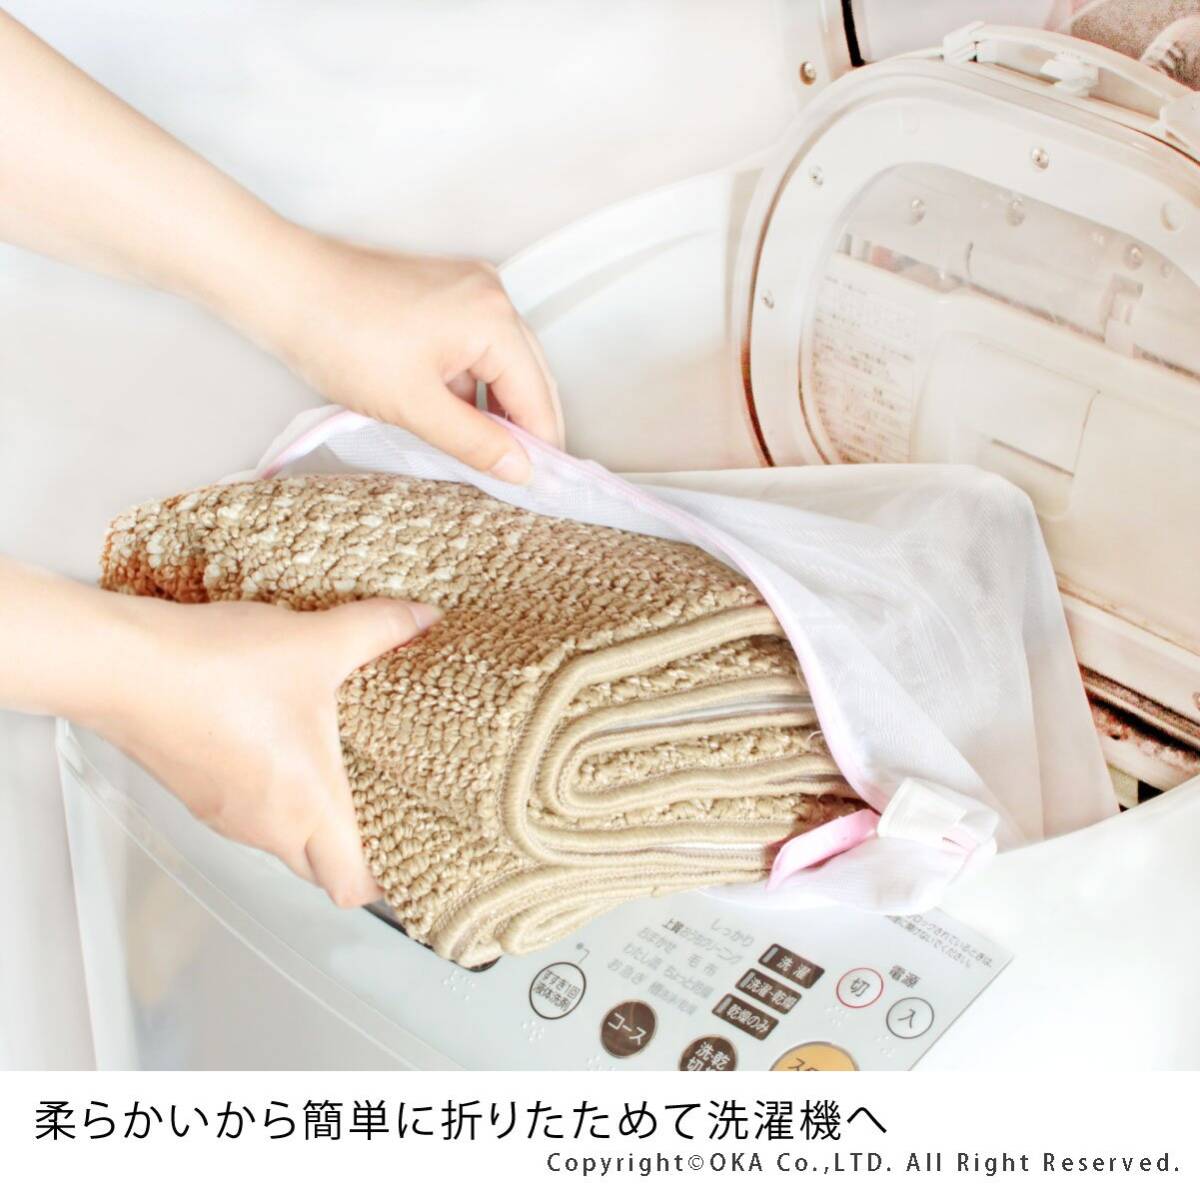 オカ(OKA) キッチンマット 優踏生 洗いやすい ずれない 45×180cm ベージュ 日本製 コンパクト包装_画像3